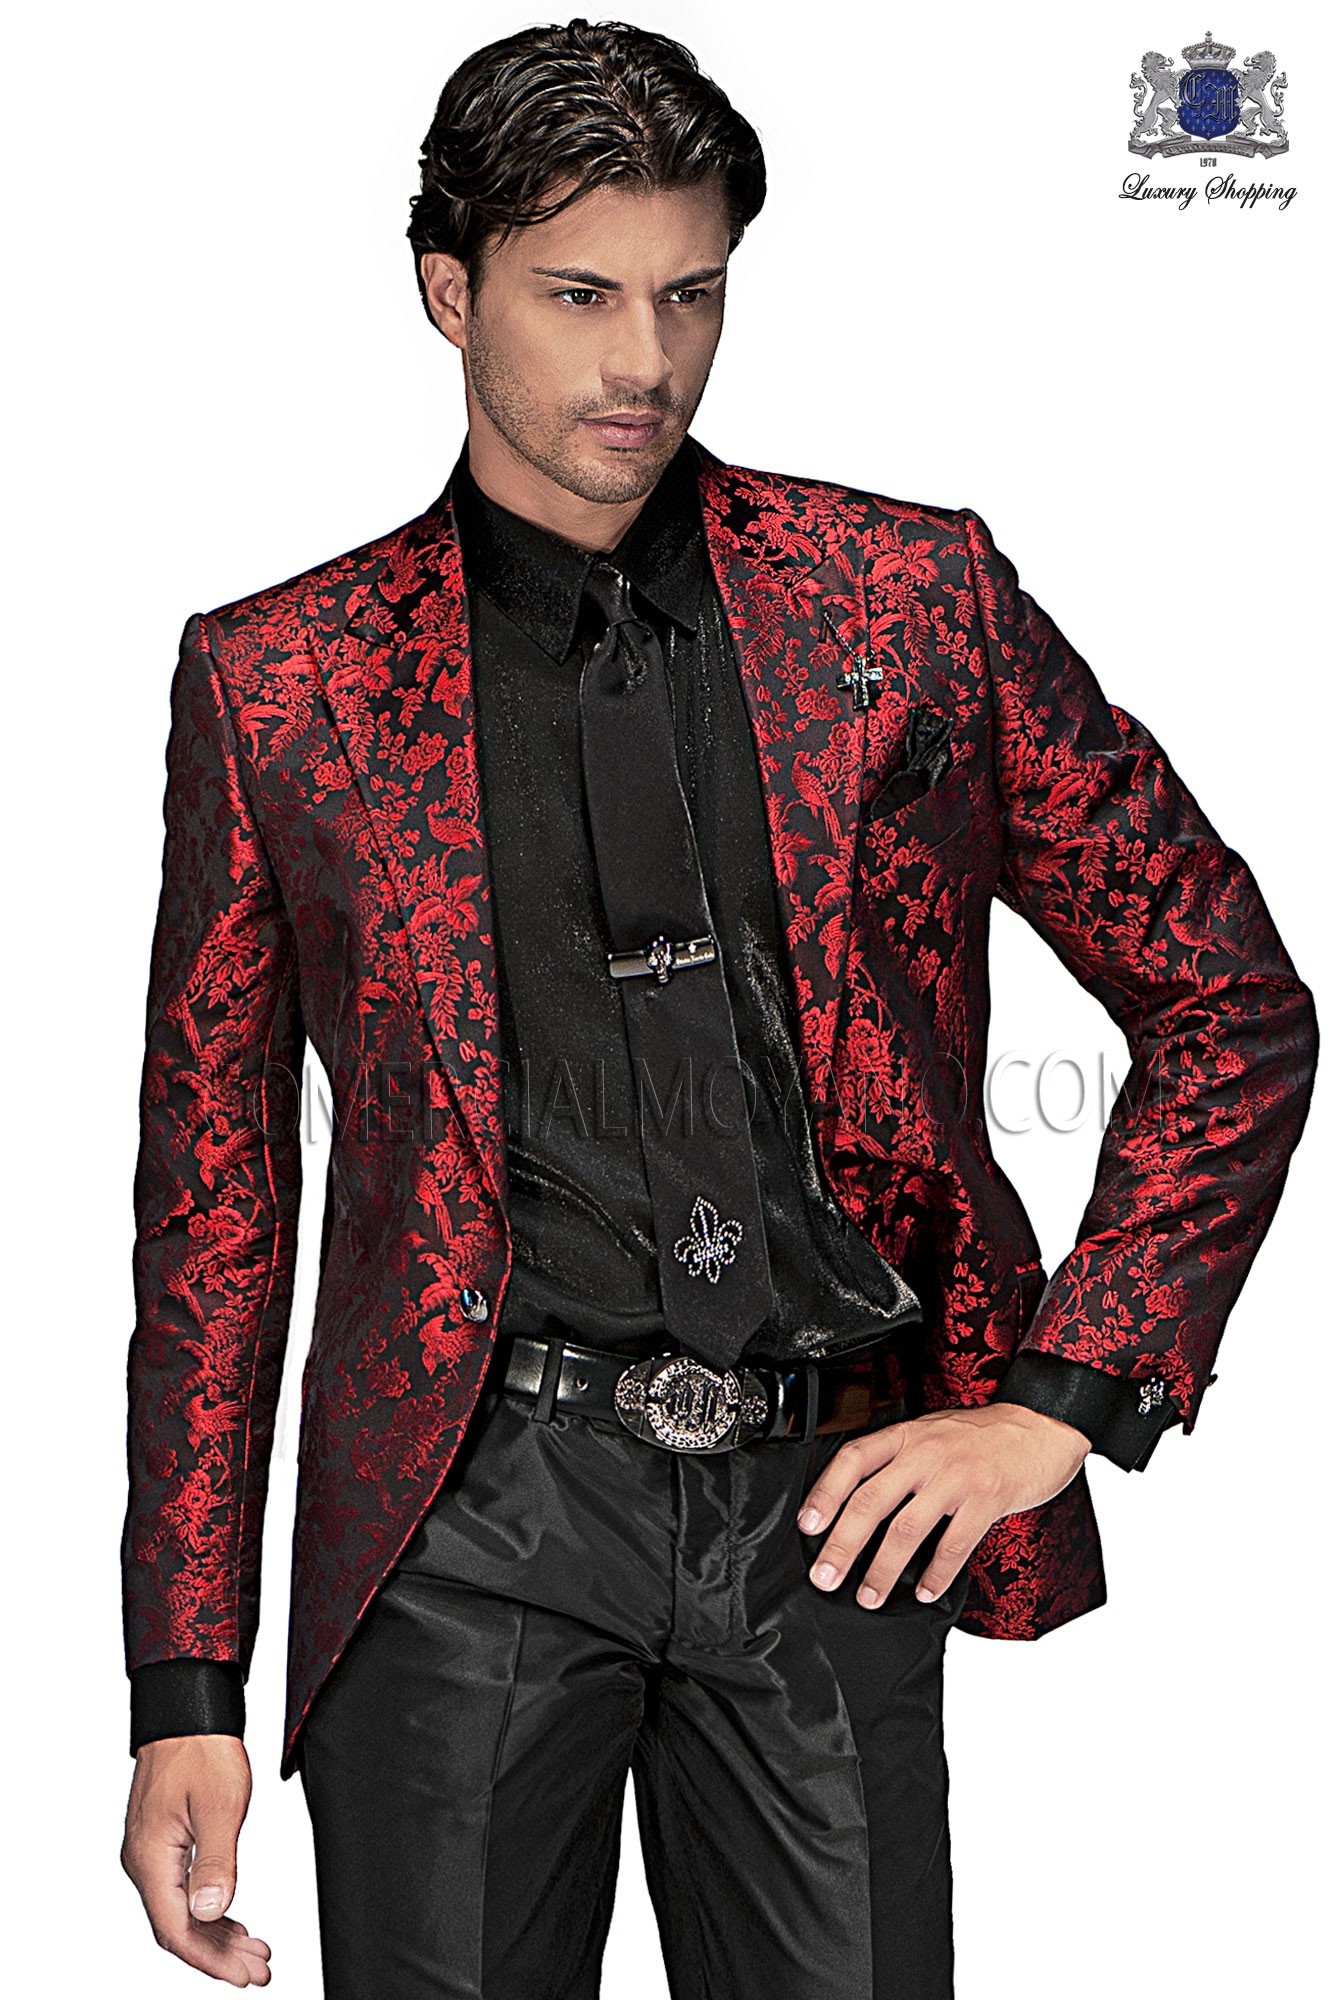 Traje de moda hombre negro/rojo modelo: 60363 Mario Moyano colección Emotion